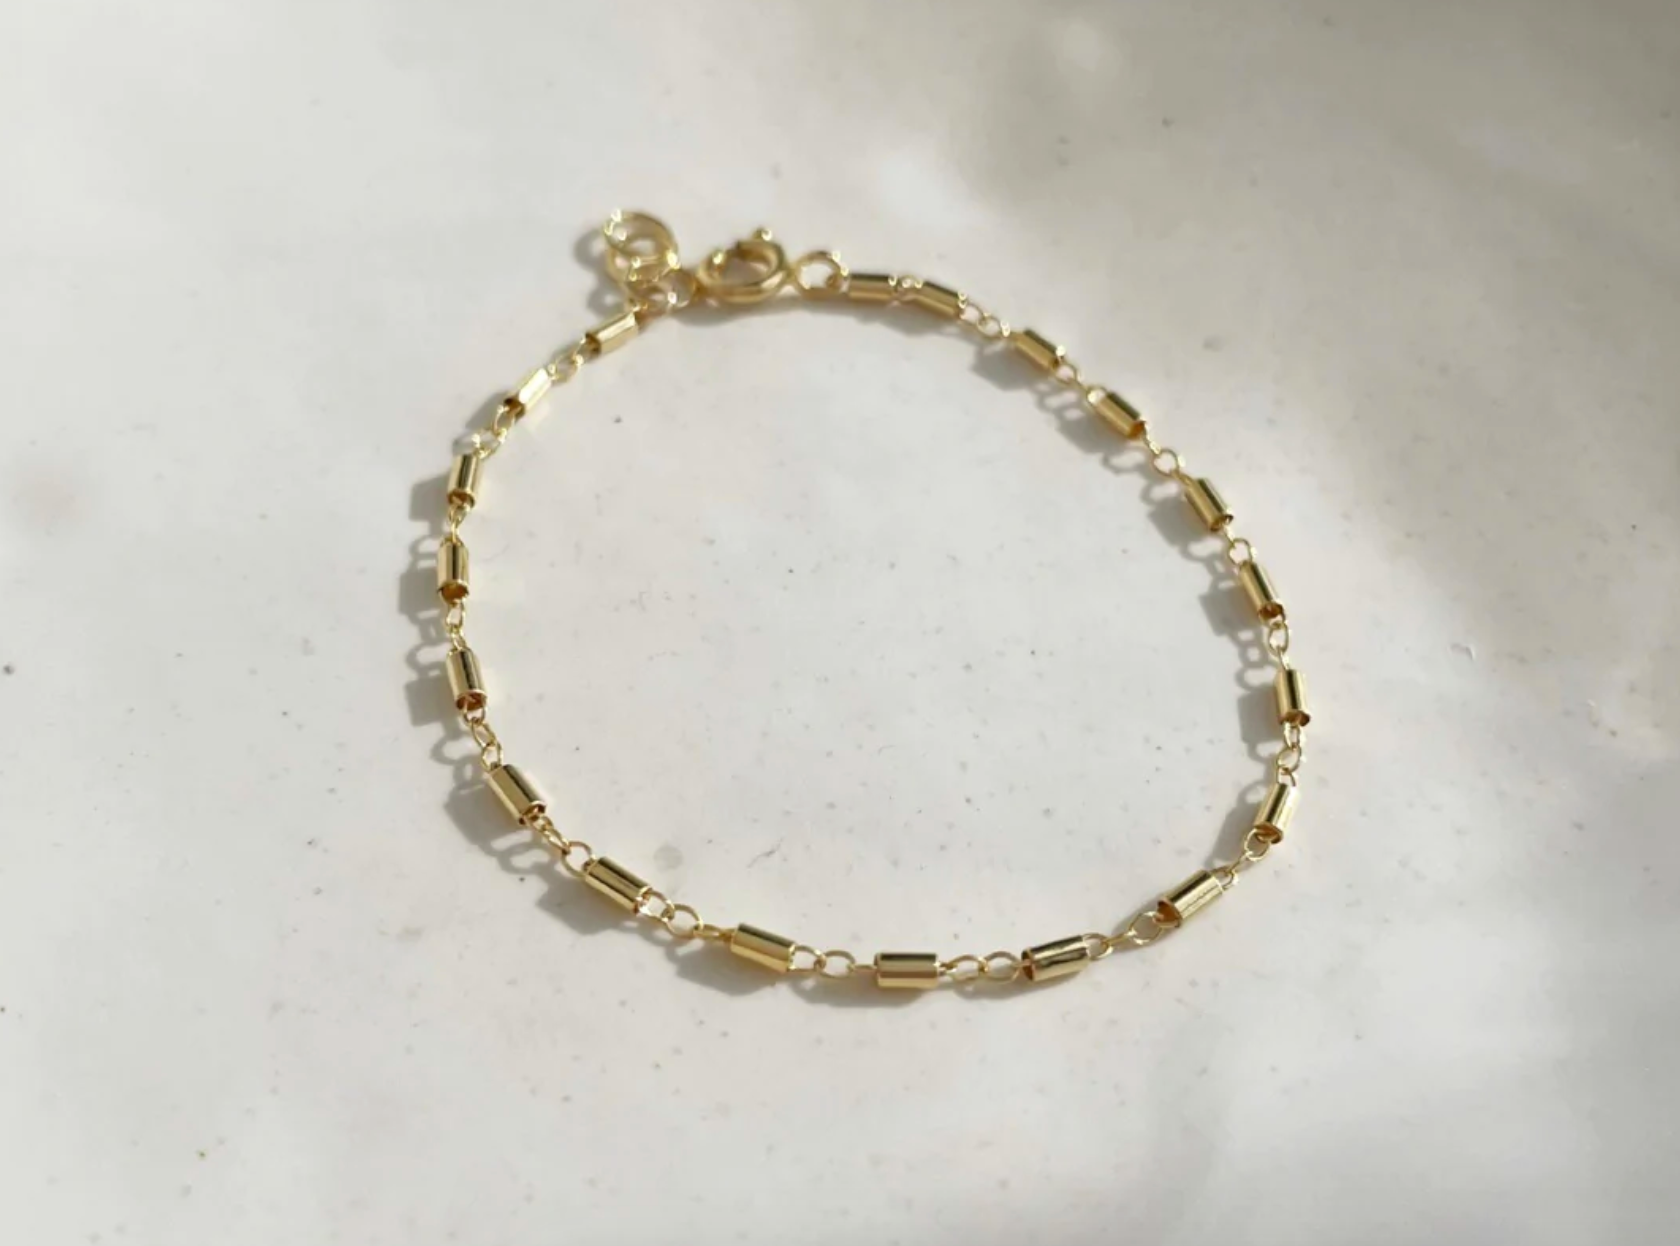 ✦Austaras Jewelry✦ Genuine Leather Bracelet • 14K GOLD / SILVER